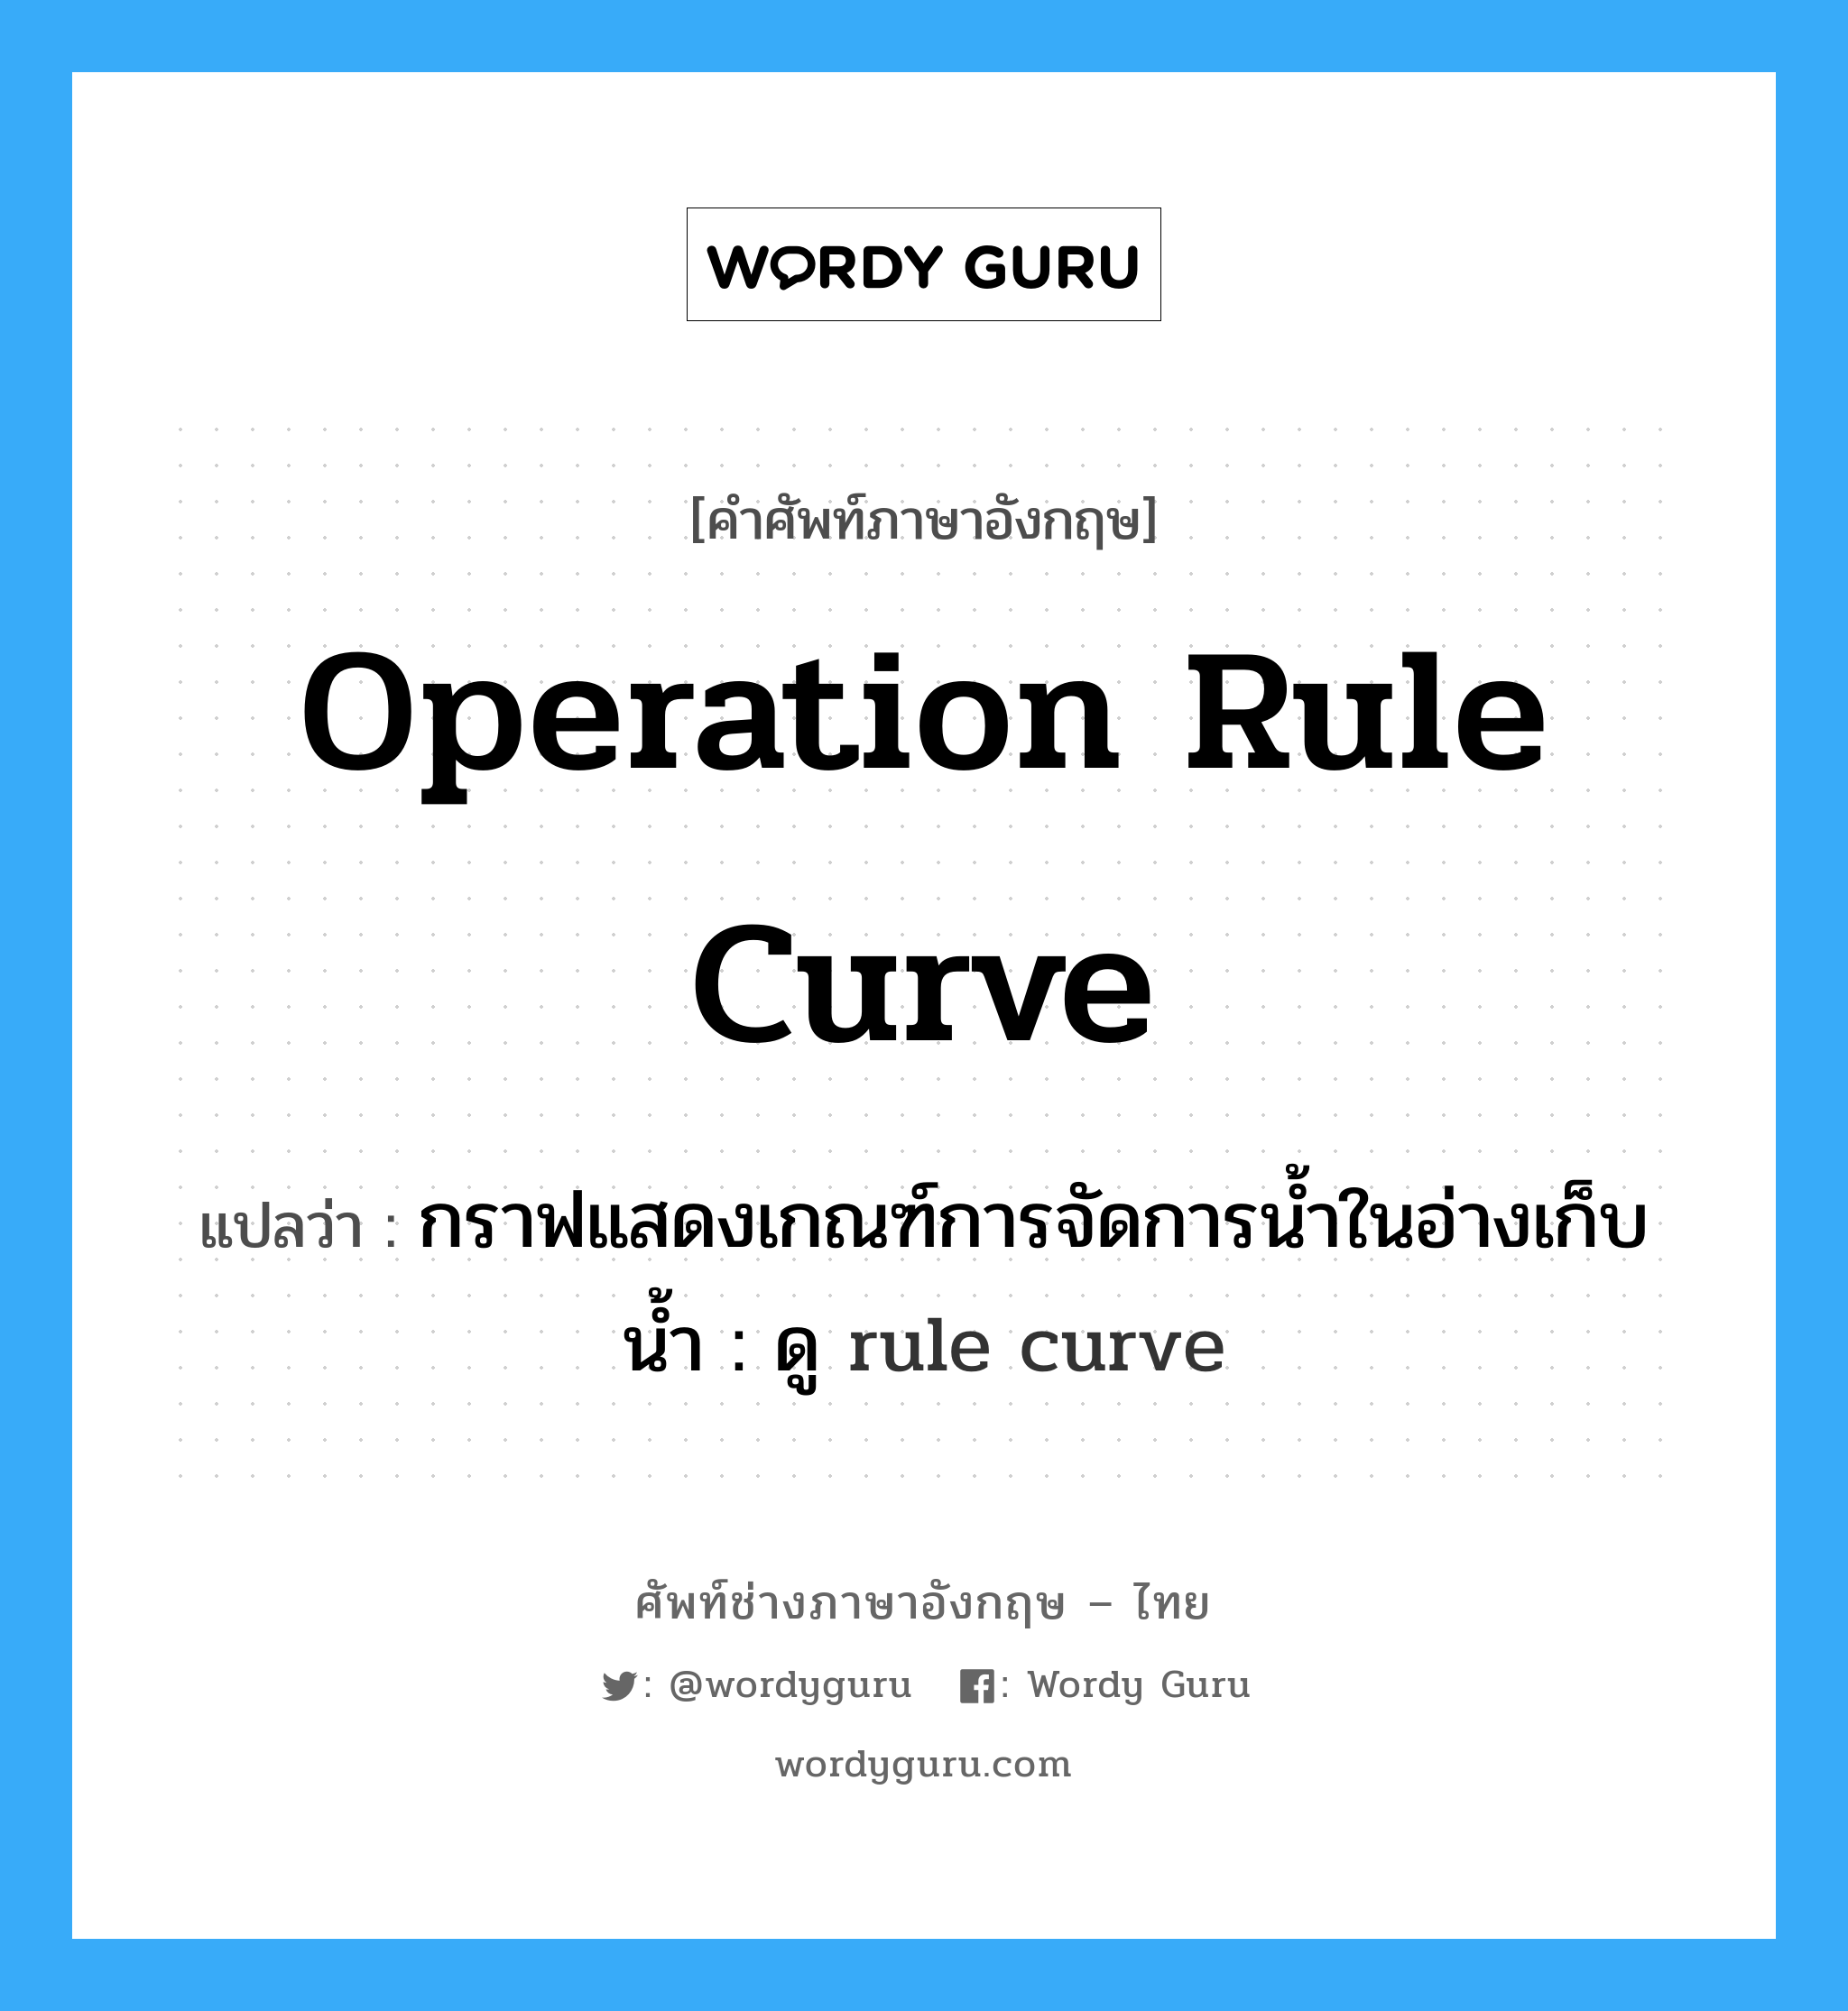 กราฟแสดงเกณฑ์การจัดการน้ำในอ่างเก็บน้ำ : ดู rule curve ภาษาอังกฤษ?, คำศัพท์ช่างภาษาอังกฤษ - ไทย กราฟแสดงเกณฑ์การจัดการน้ำในอ่างเก็บน้ำ : ดู rule curve คำศัพท์ภาษาอังกฤษ กราฟแสดงเกณฑ์การจัดการน้ำในอ่างเก็บน้ำ : ดู rule curve แปลว่า operation rule curve